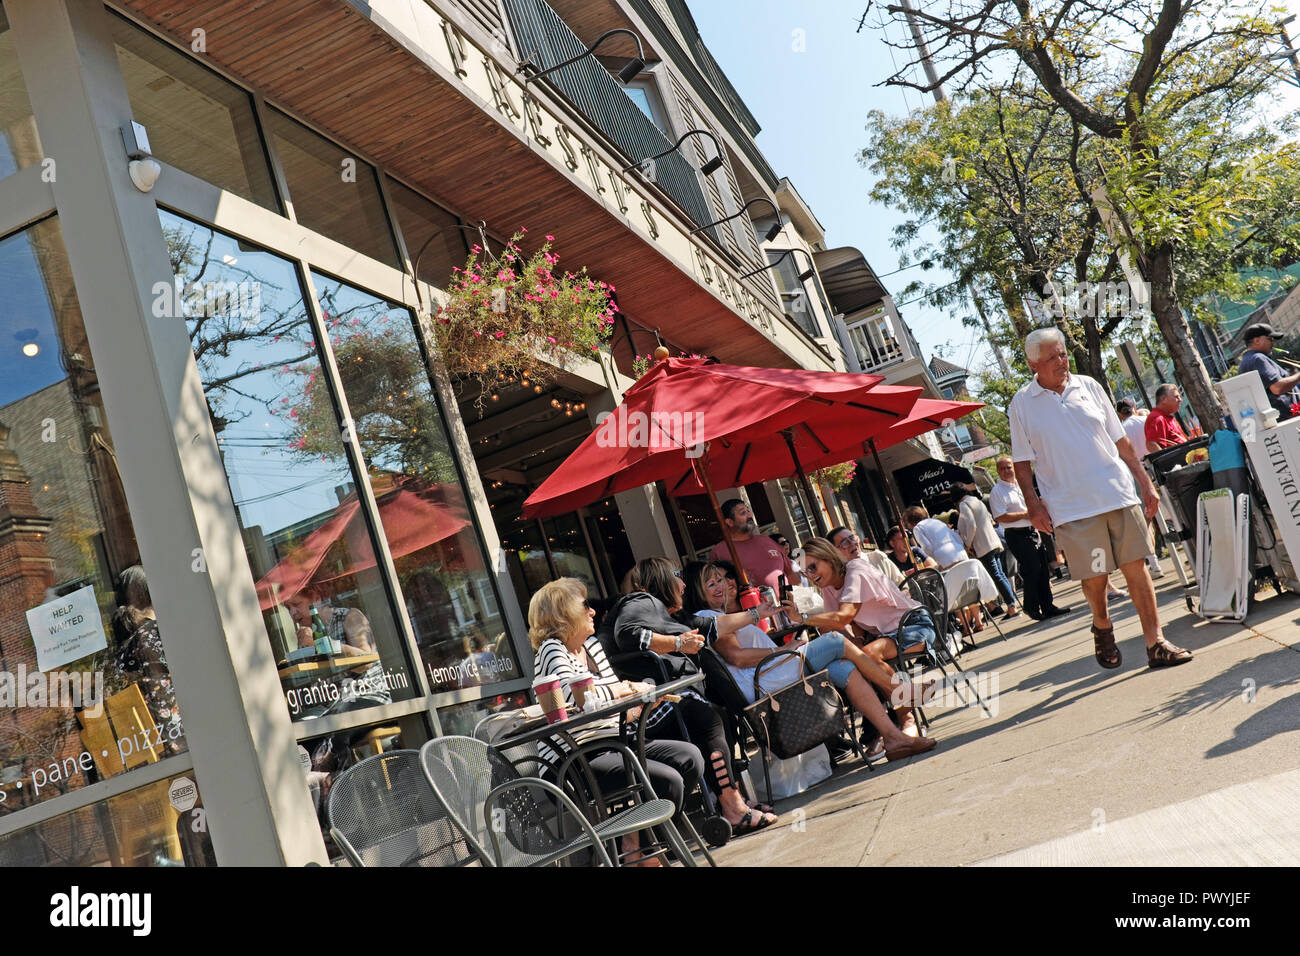 Les habitants de Cleveland profiter de la chaude Octobre météo à tables en plein air en face de Prestis dans le quartier Little Italy de Cleveland, Ohio, USA. Banque D'Images